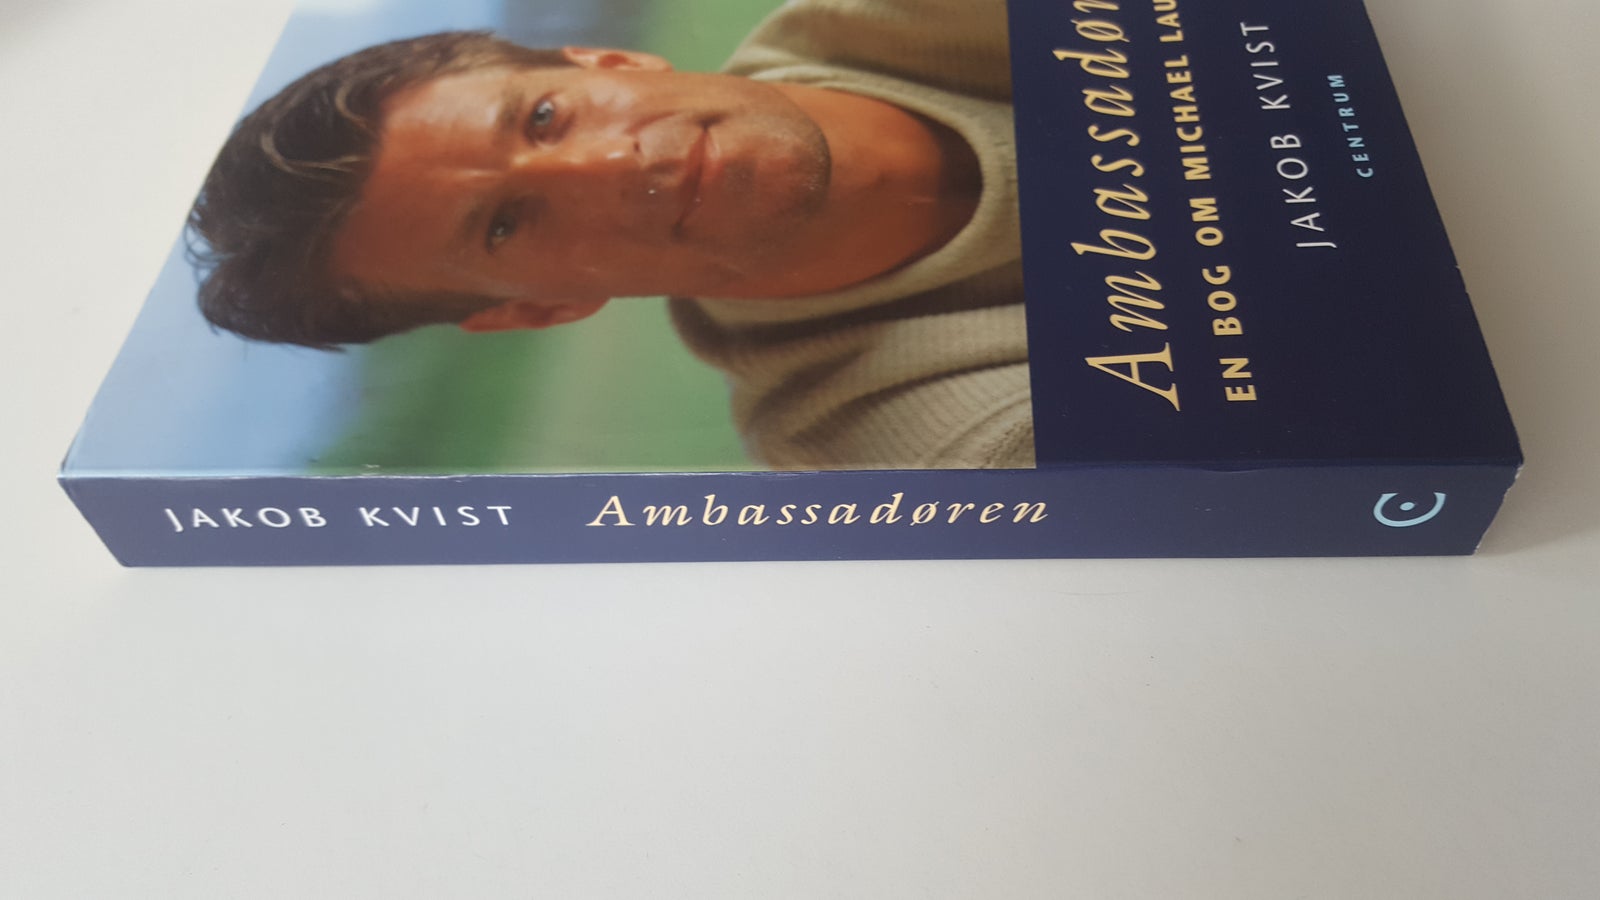 Ambassadøren - en bog om Michael Laudrup, Jakob Kvist